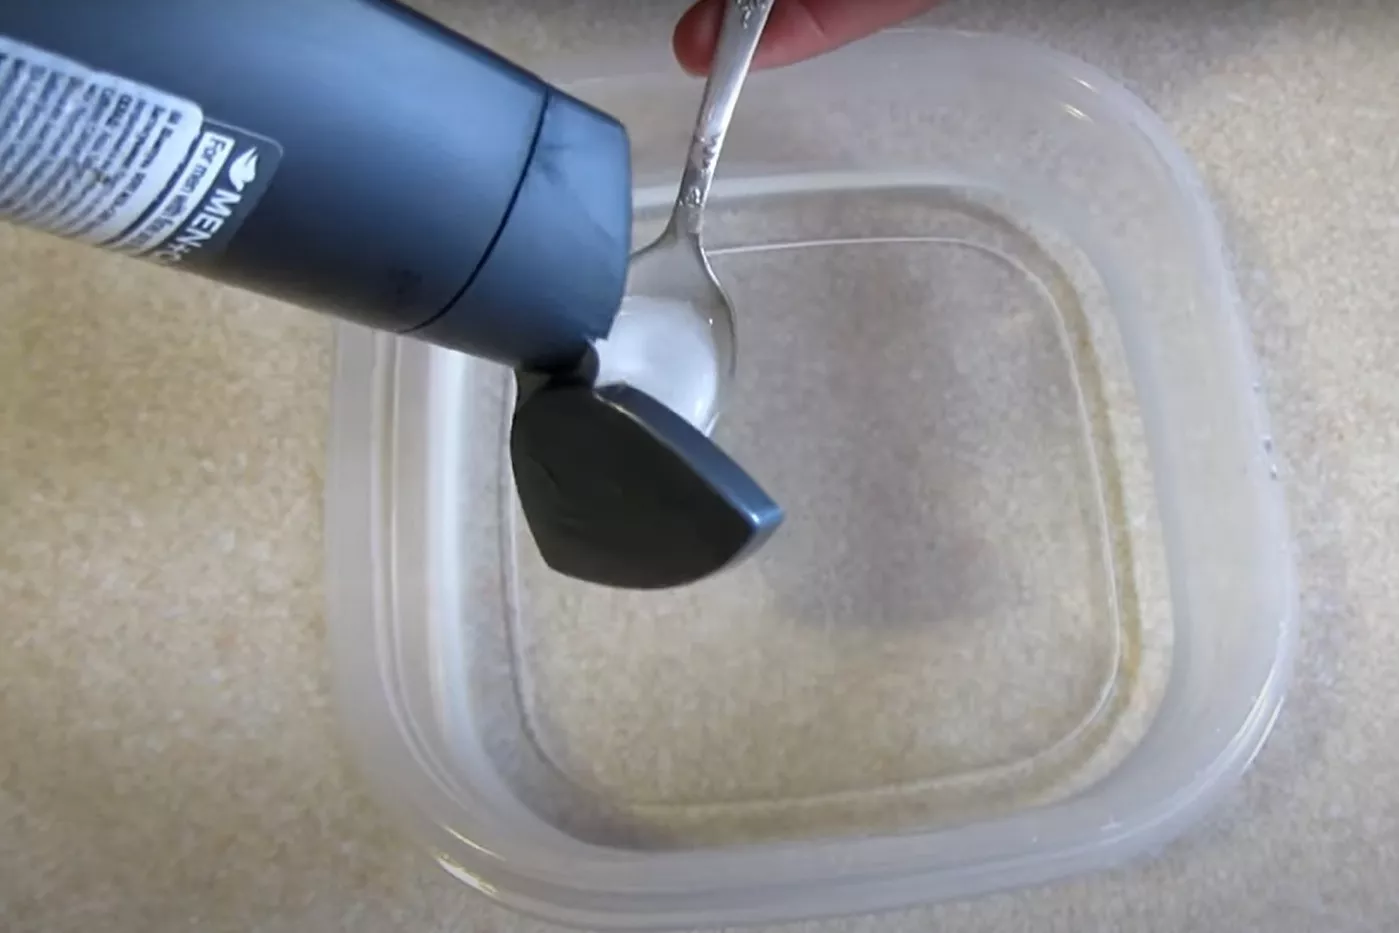 Как почистить расческу. Фото: скриншот из YouTube/Советы для дома